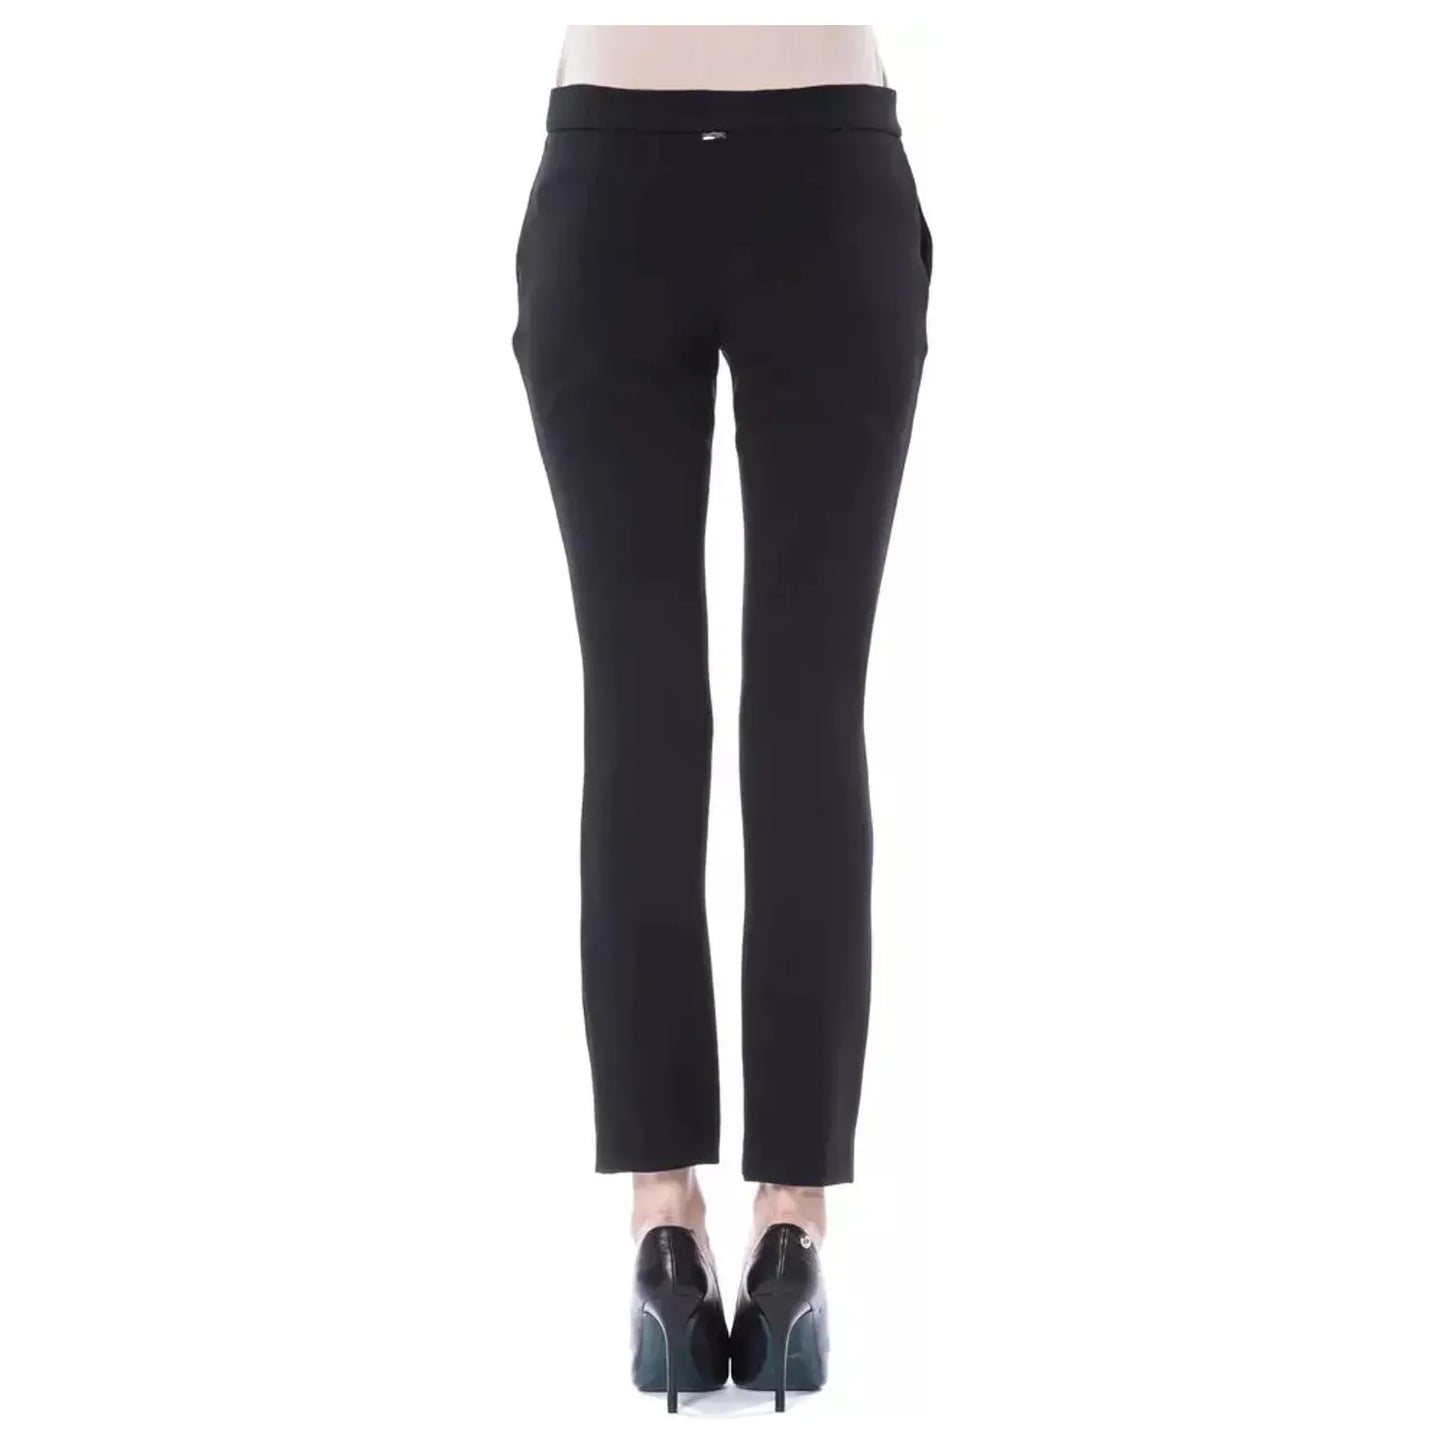 BYBLOS Elegant Black Skinny Pants with Unique Detail nero-jeans-pant-3 stock_product_image_17642_1378426372-17-8dc34a76-a37.webp